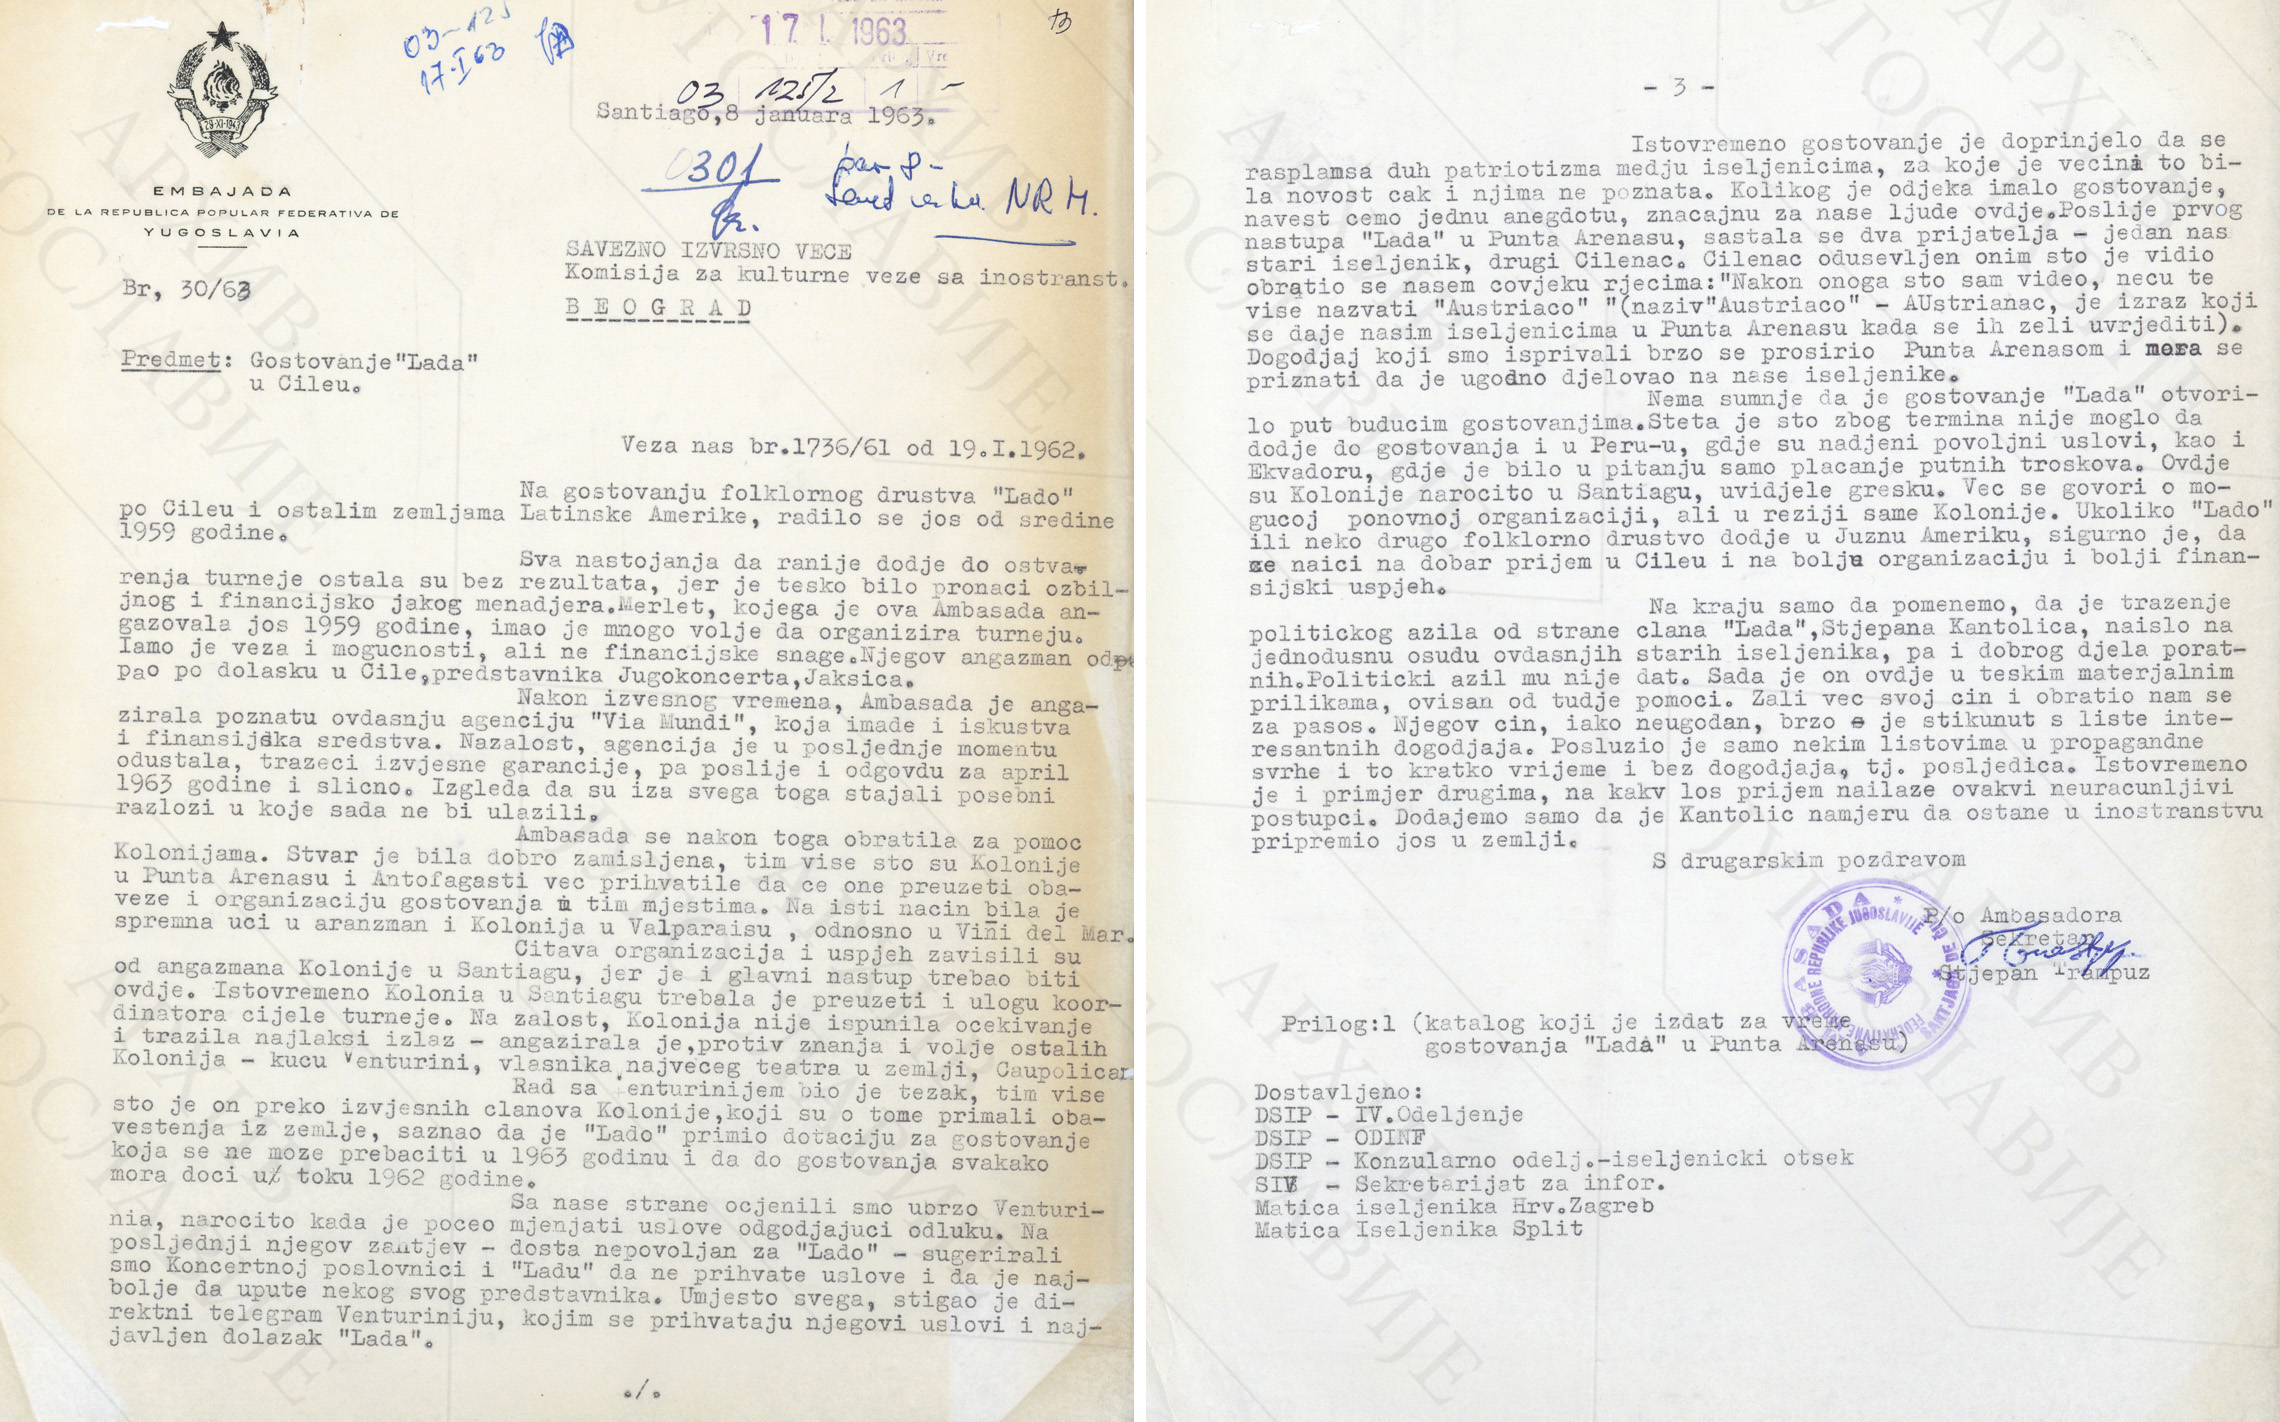  Амбасаде ФНРЈ о турнеји Лада у Чилеу, 8. 1. 1963